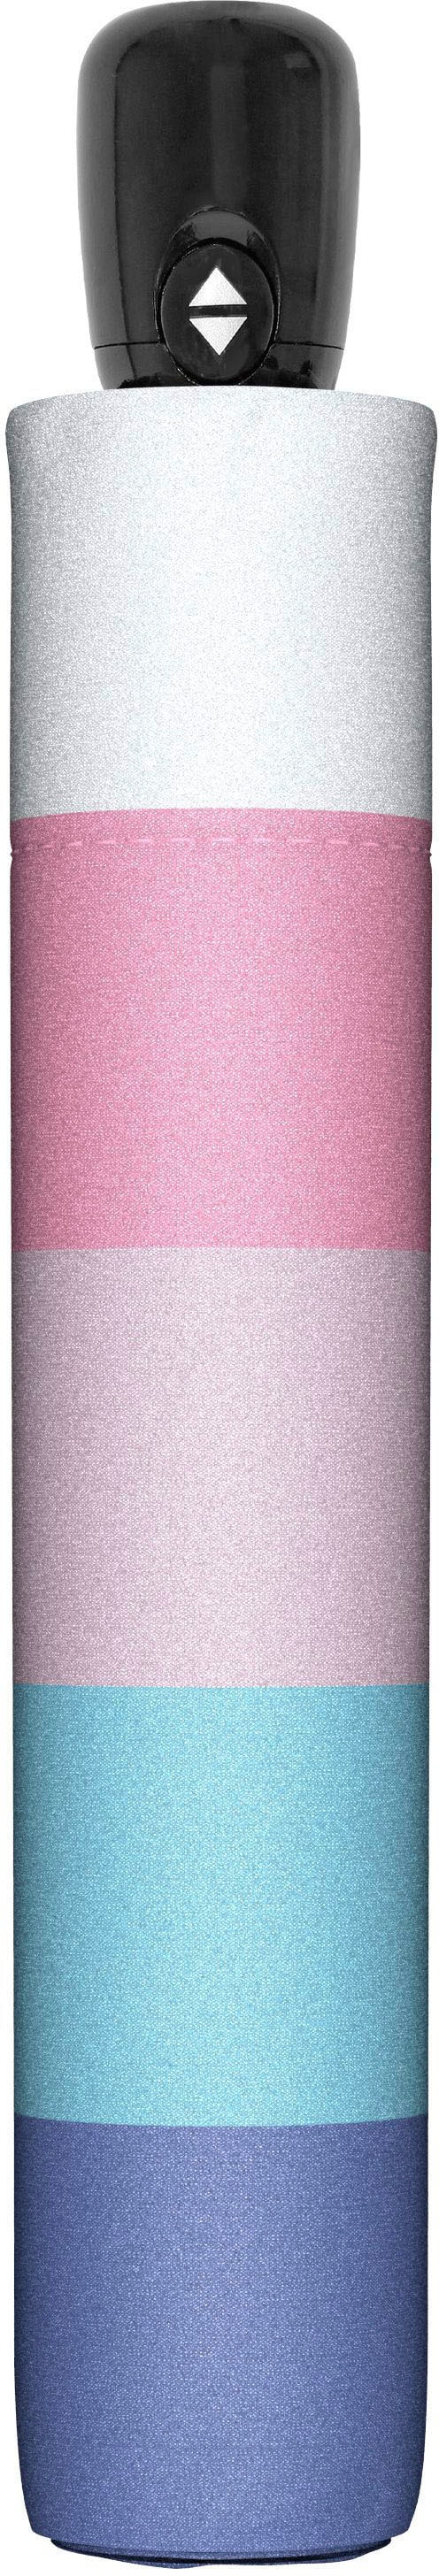 doppler® Taschenregenschirm pastel« Magic online Pride Mini, BAUR kaufen »modern.ART cool 